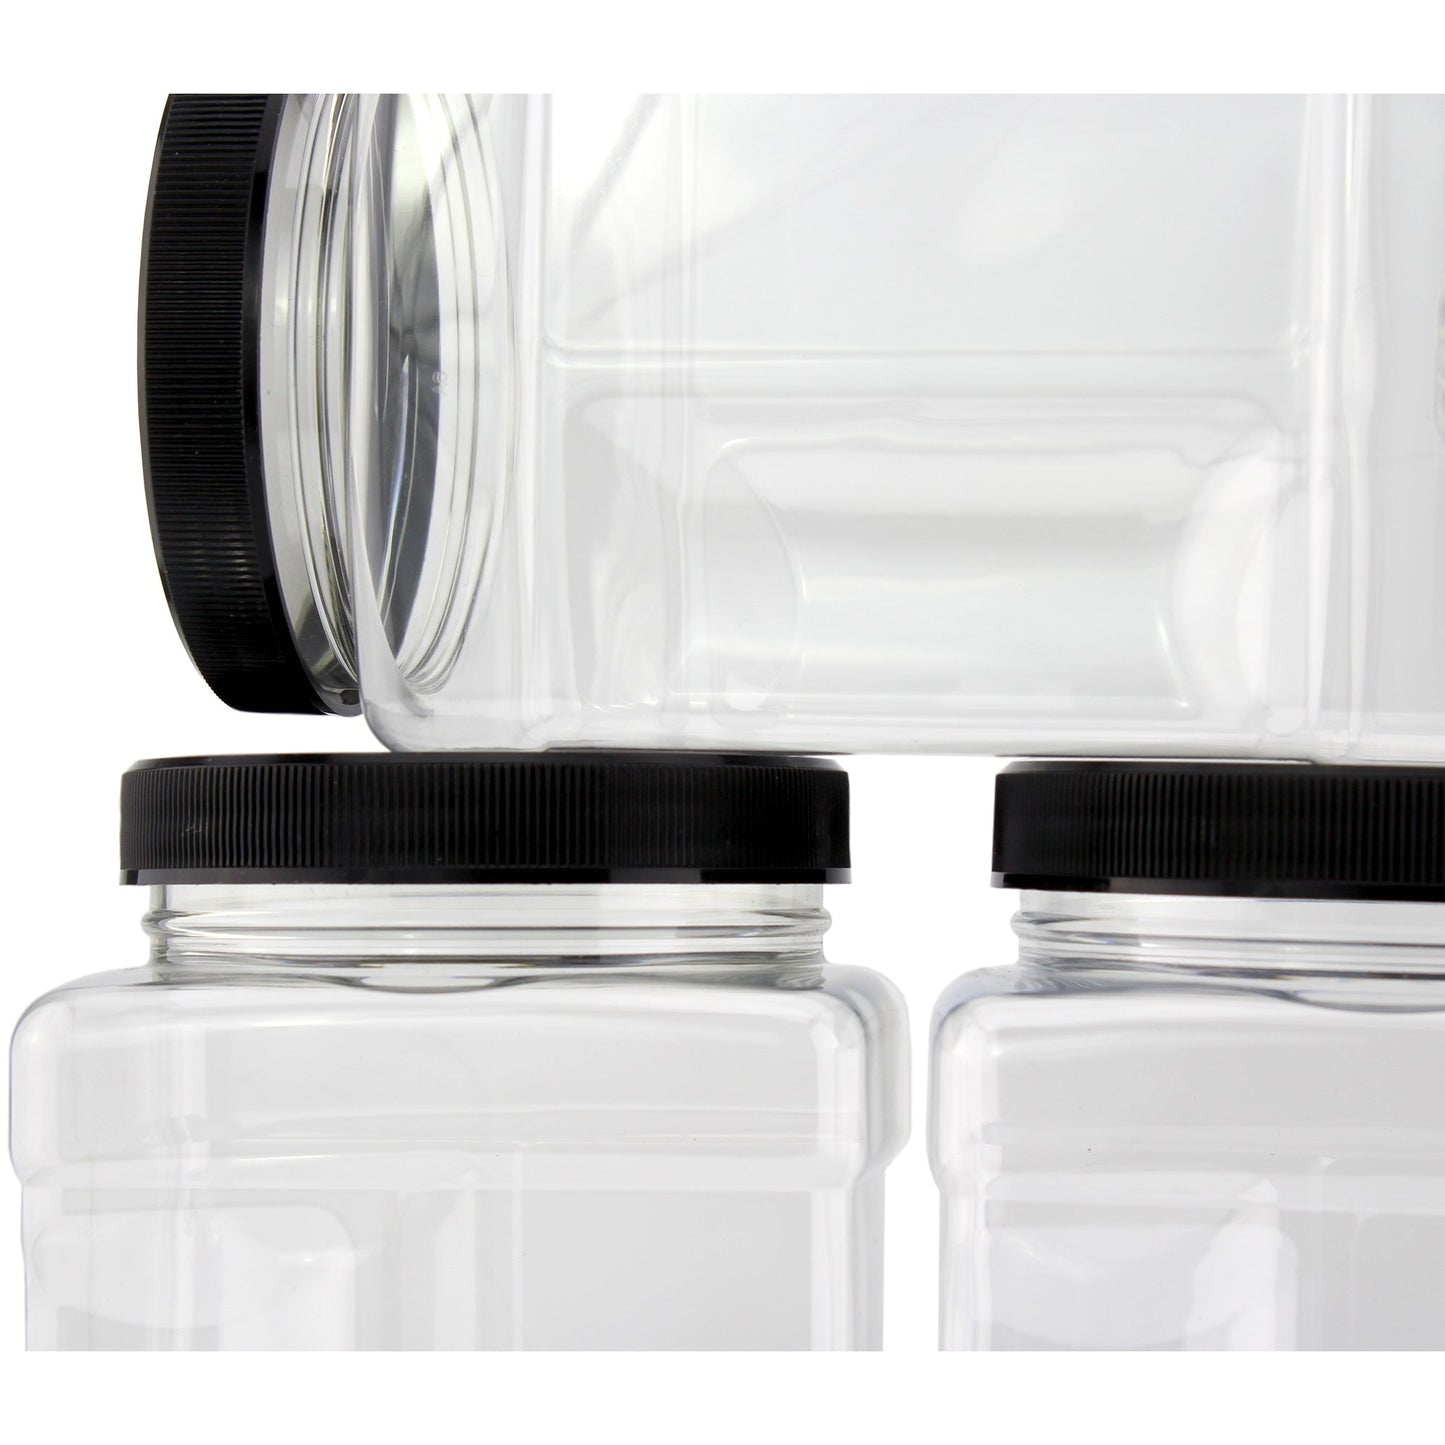 32oz Square Plastic Jars (4-Pack) - sh1470cb032oz